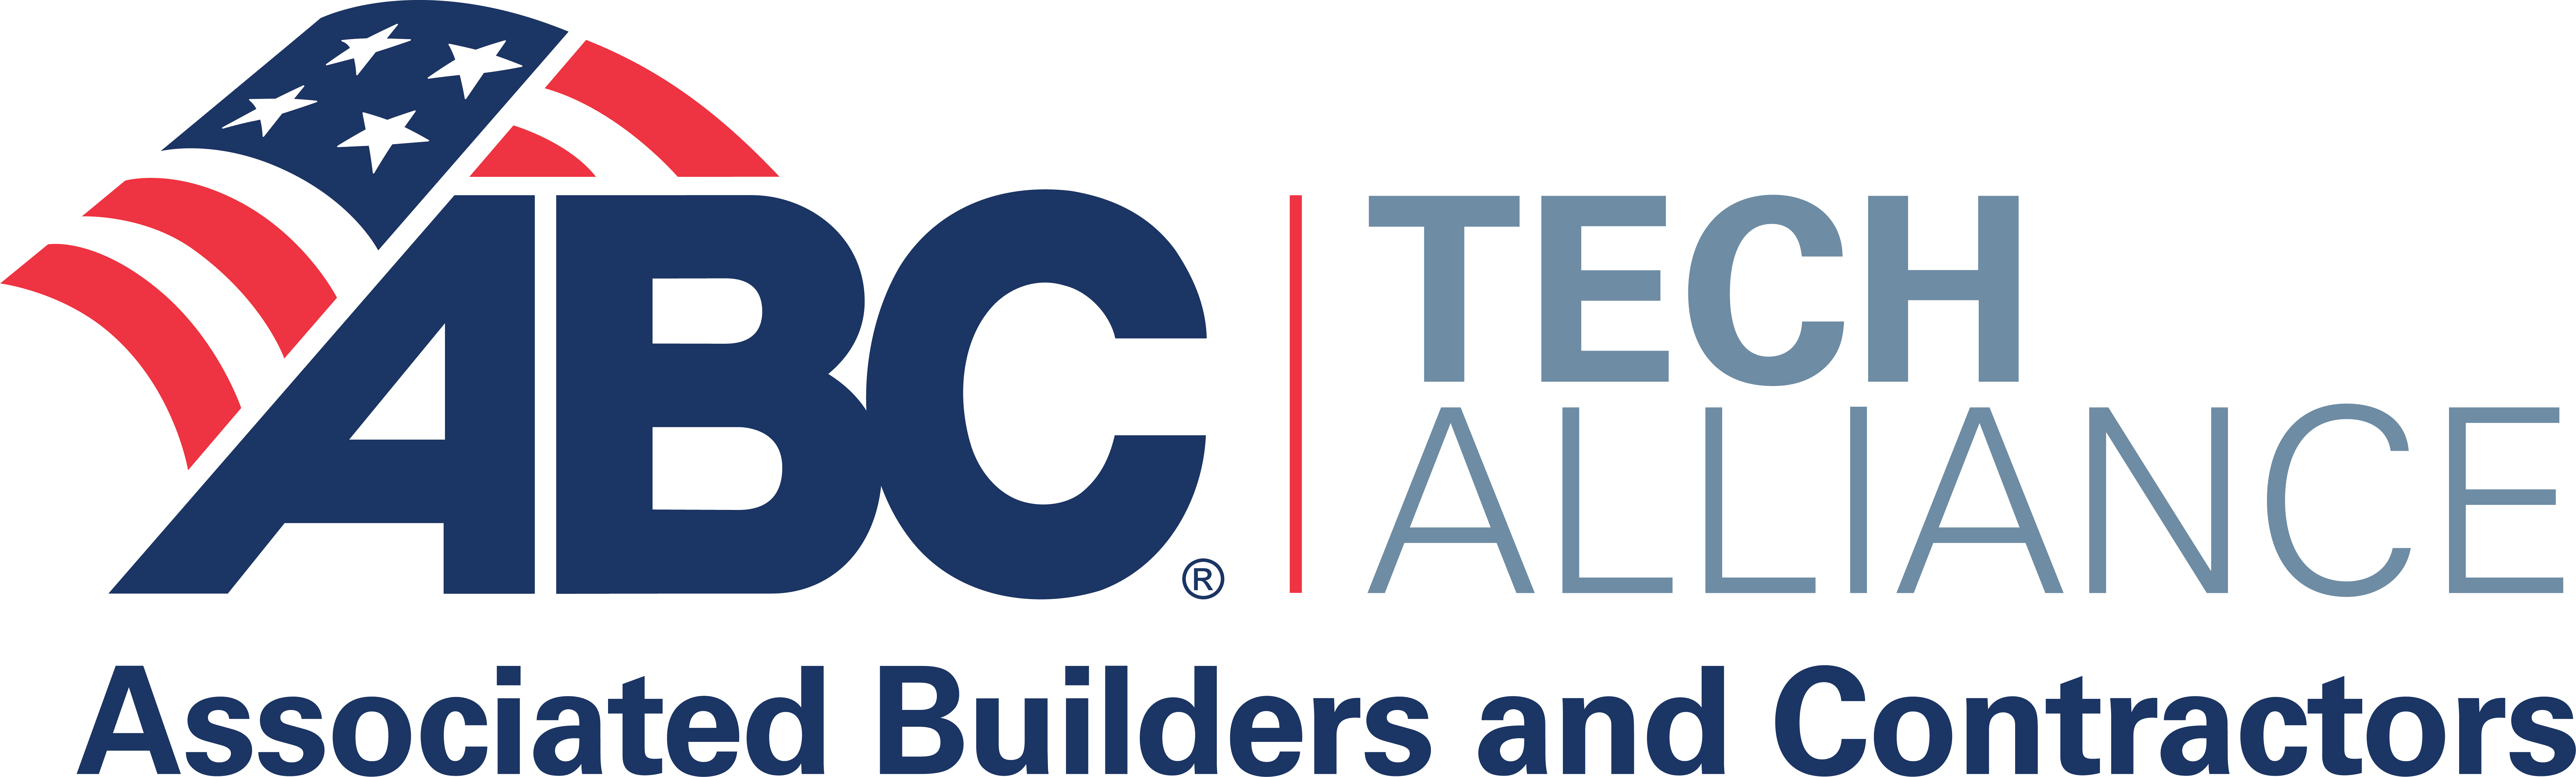 ABC Tech Alliance Color